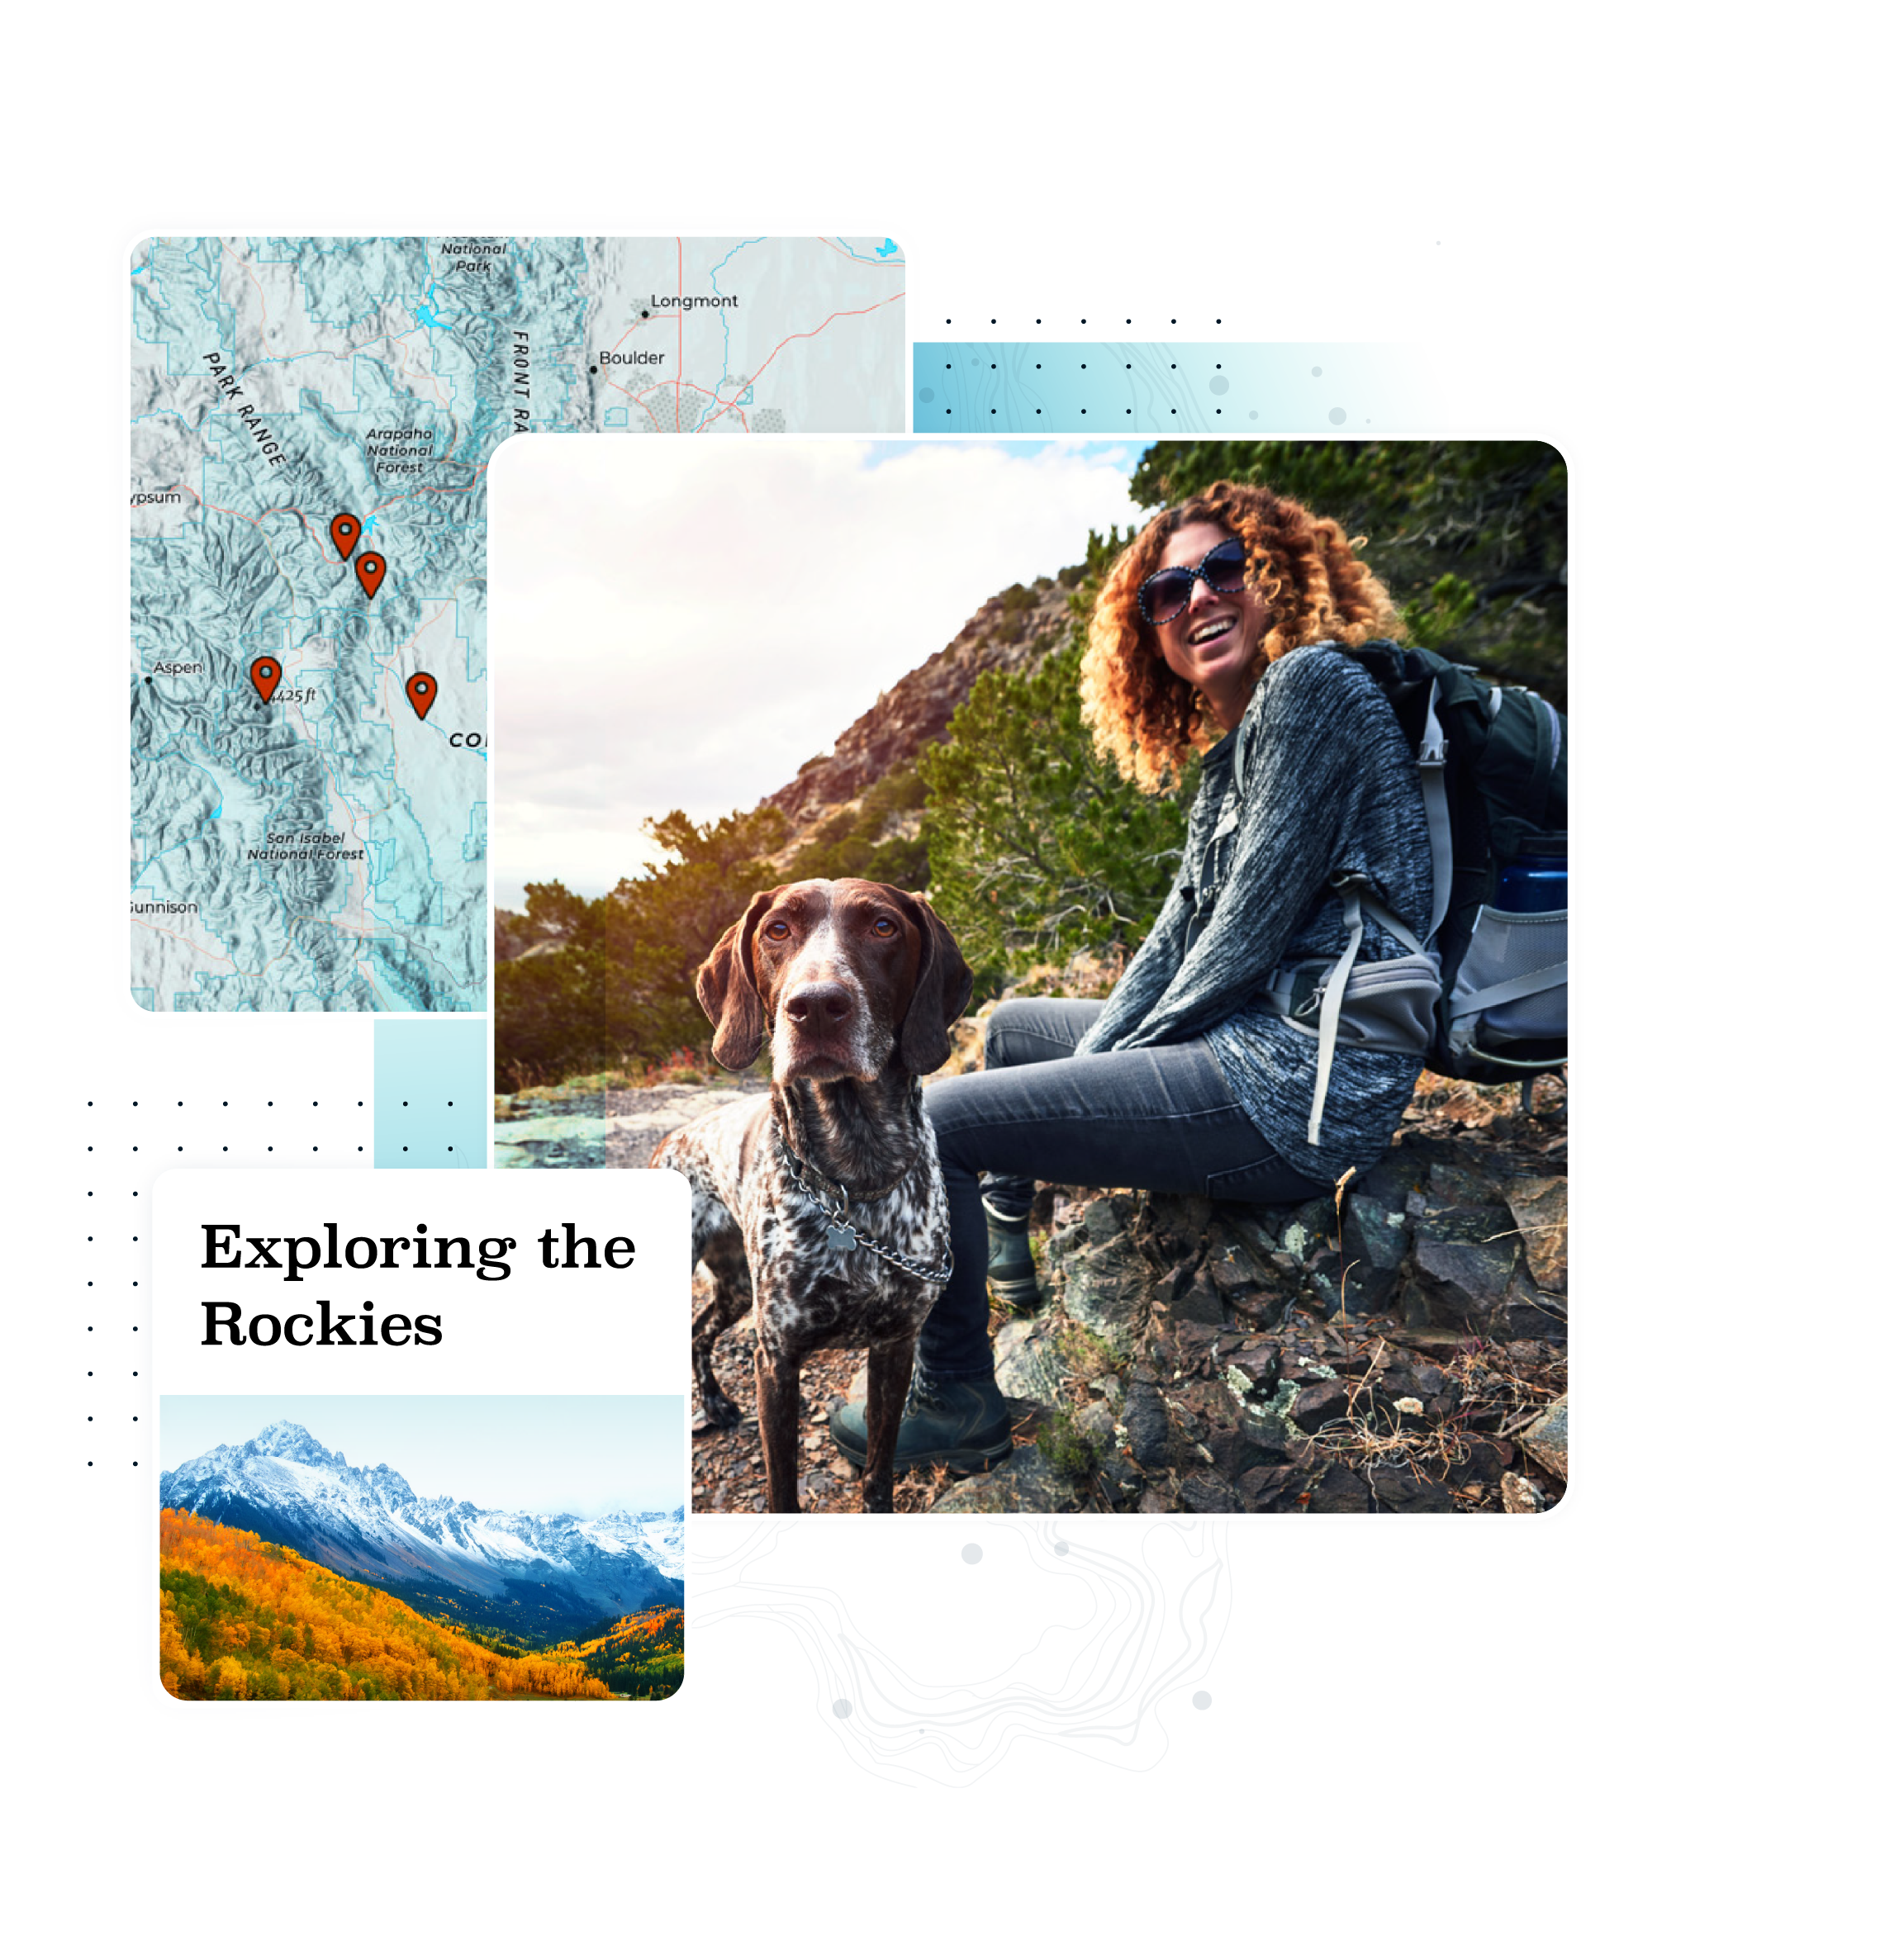 Una mappa del Colorado, una donna con lo zaino che sorride su una roccia con il suo cane e le montagne con il testo "Exploring the Rockies".